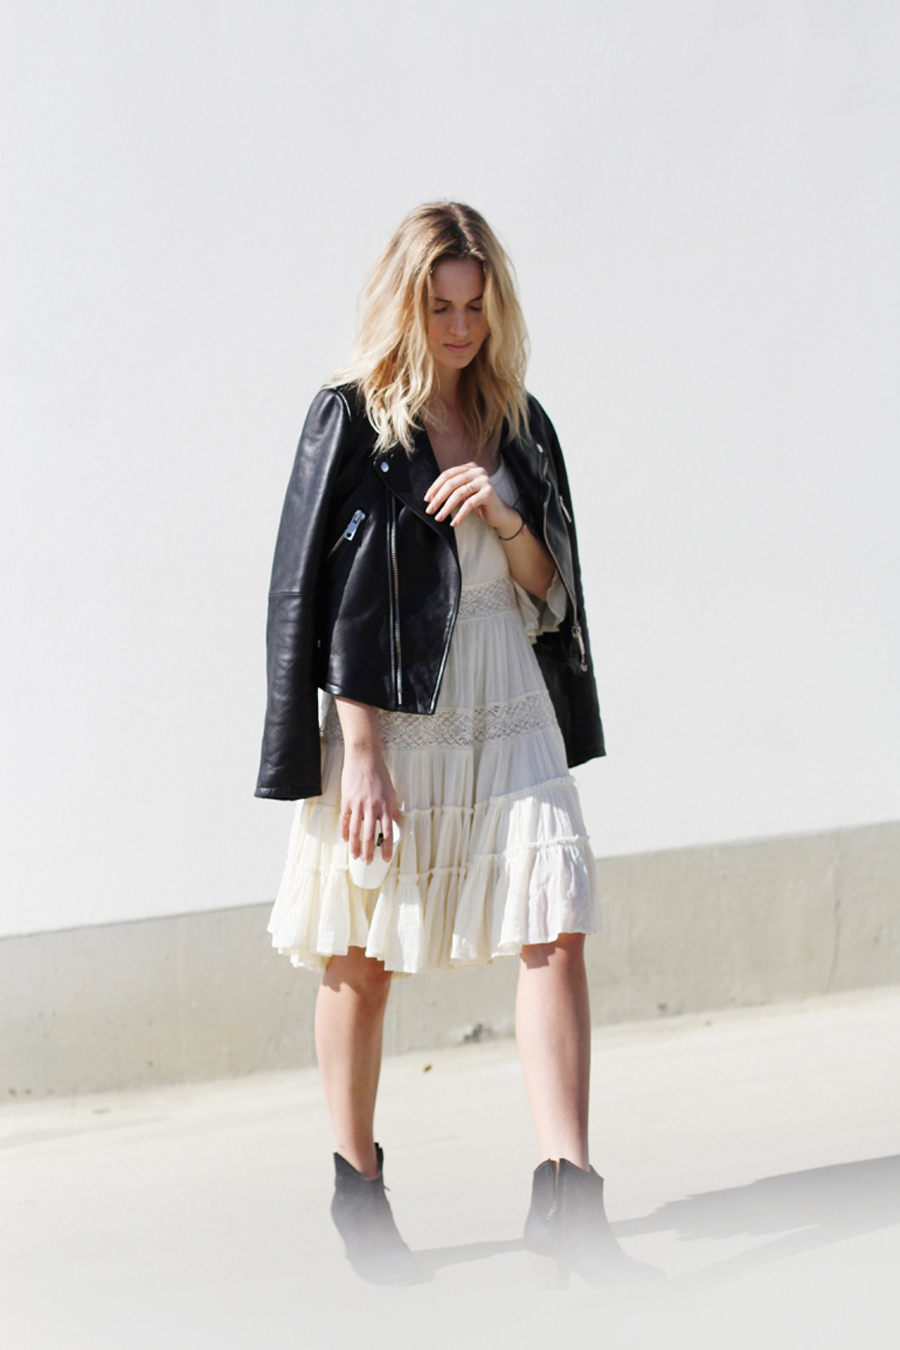 блог о моде модный блог блоггер блогер образ 2014 тренд тенденция направление стиль стильный вдохновение вид гардероб комплект облик одежда